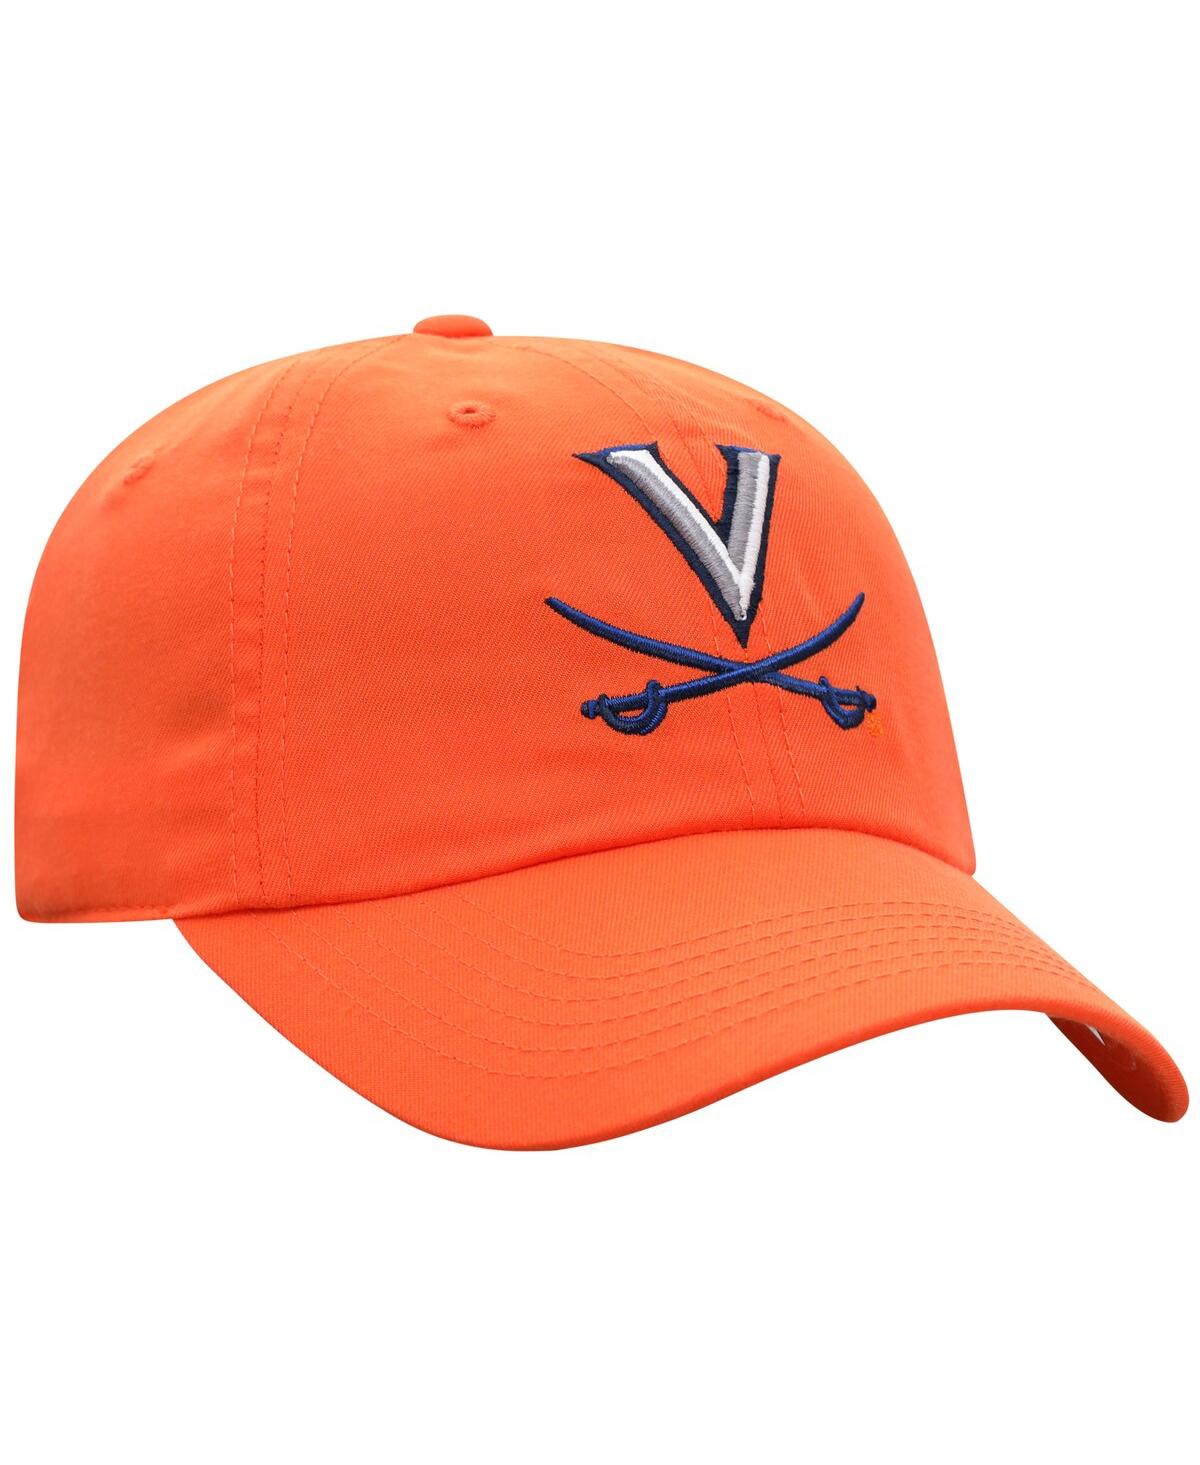 Shop Top Of The World Men's  Orange Virginia Cavaliers Staple Adjustable Hat